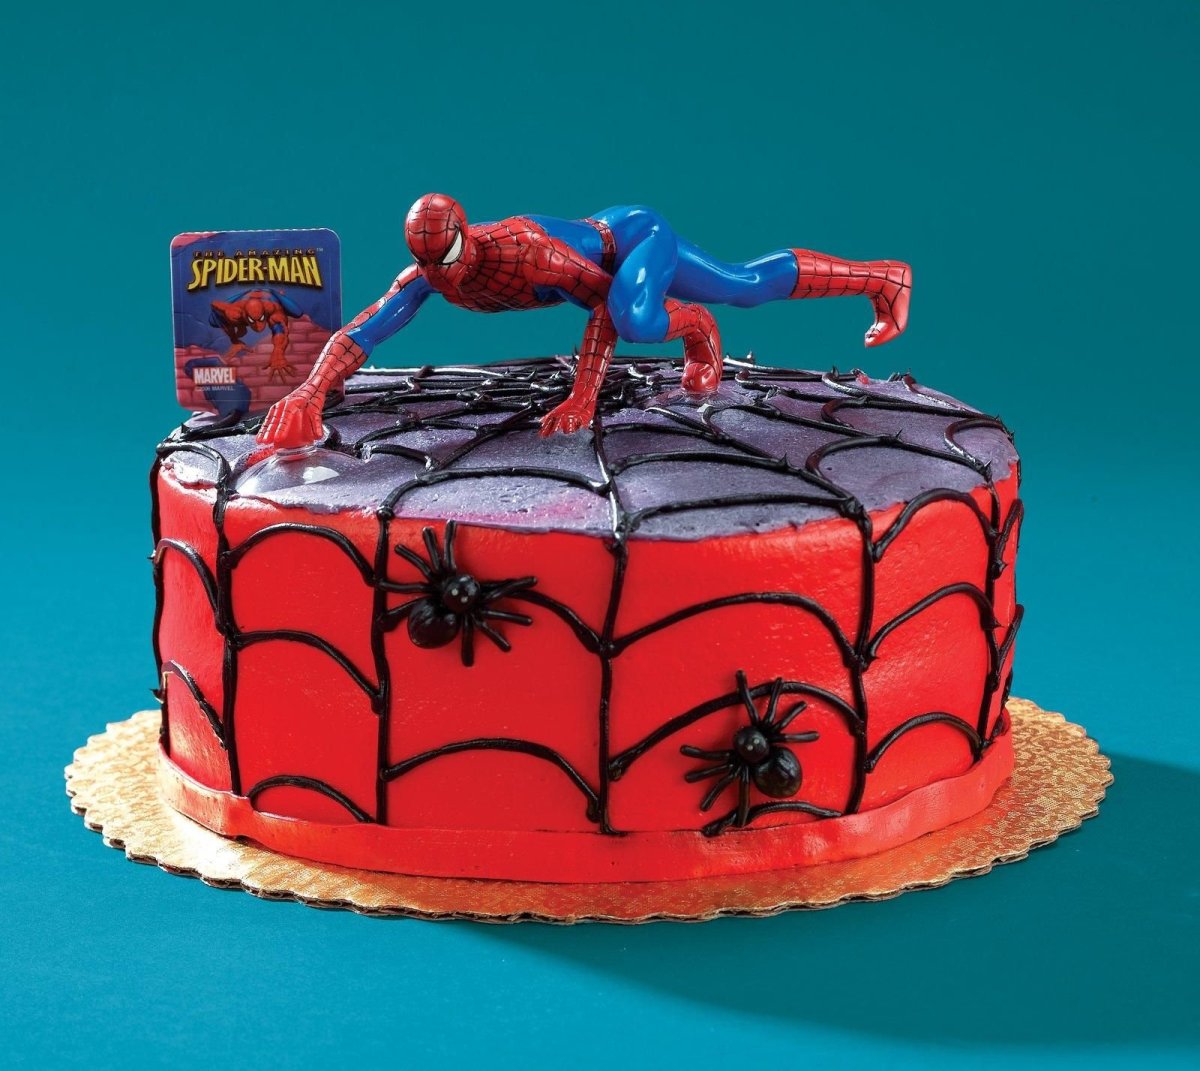 Человек паук с днем рождения 5 лет